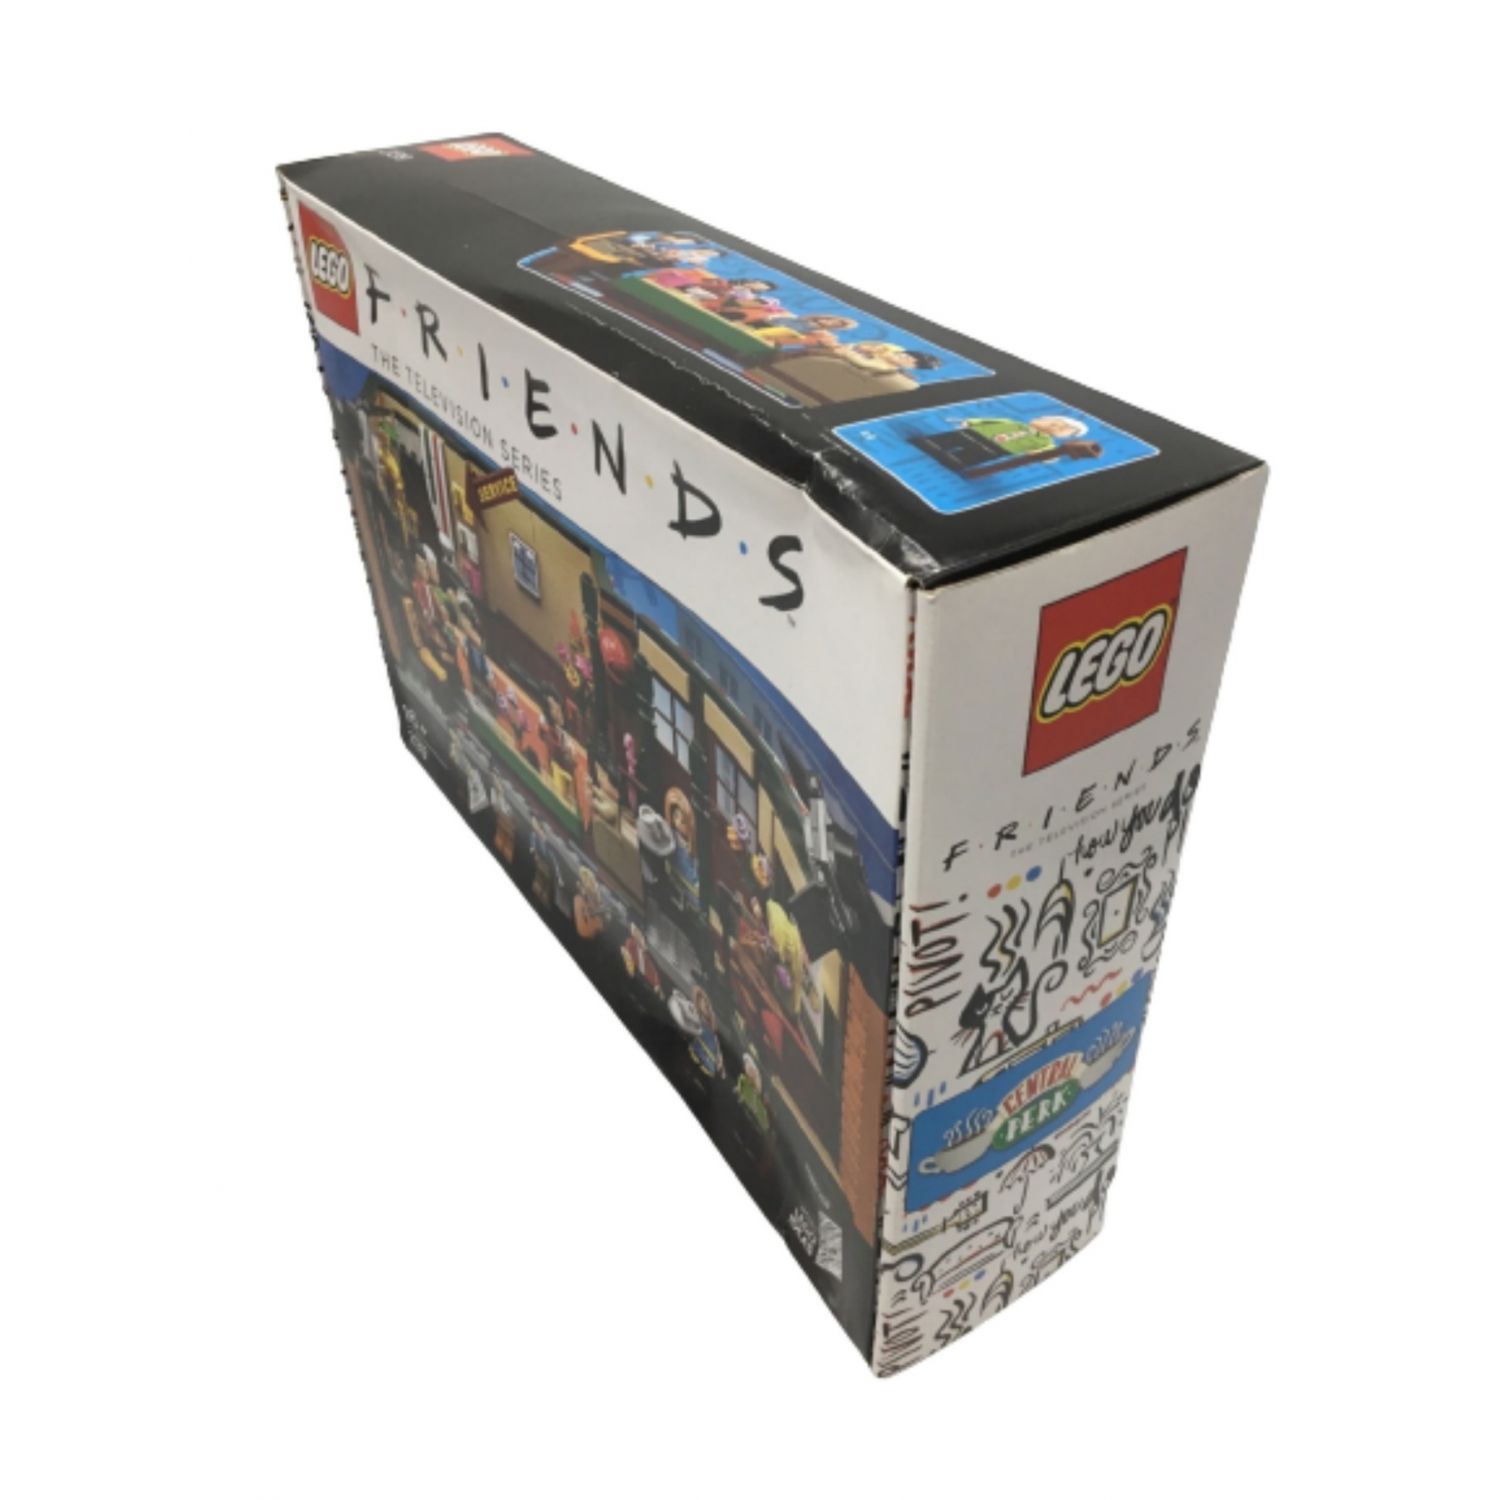 LEGO (レゴ) レゴブロック フレンズ 放送25周年記念セット セントラル